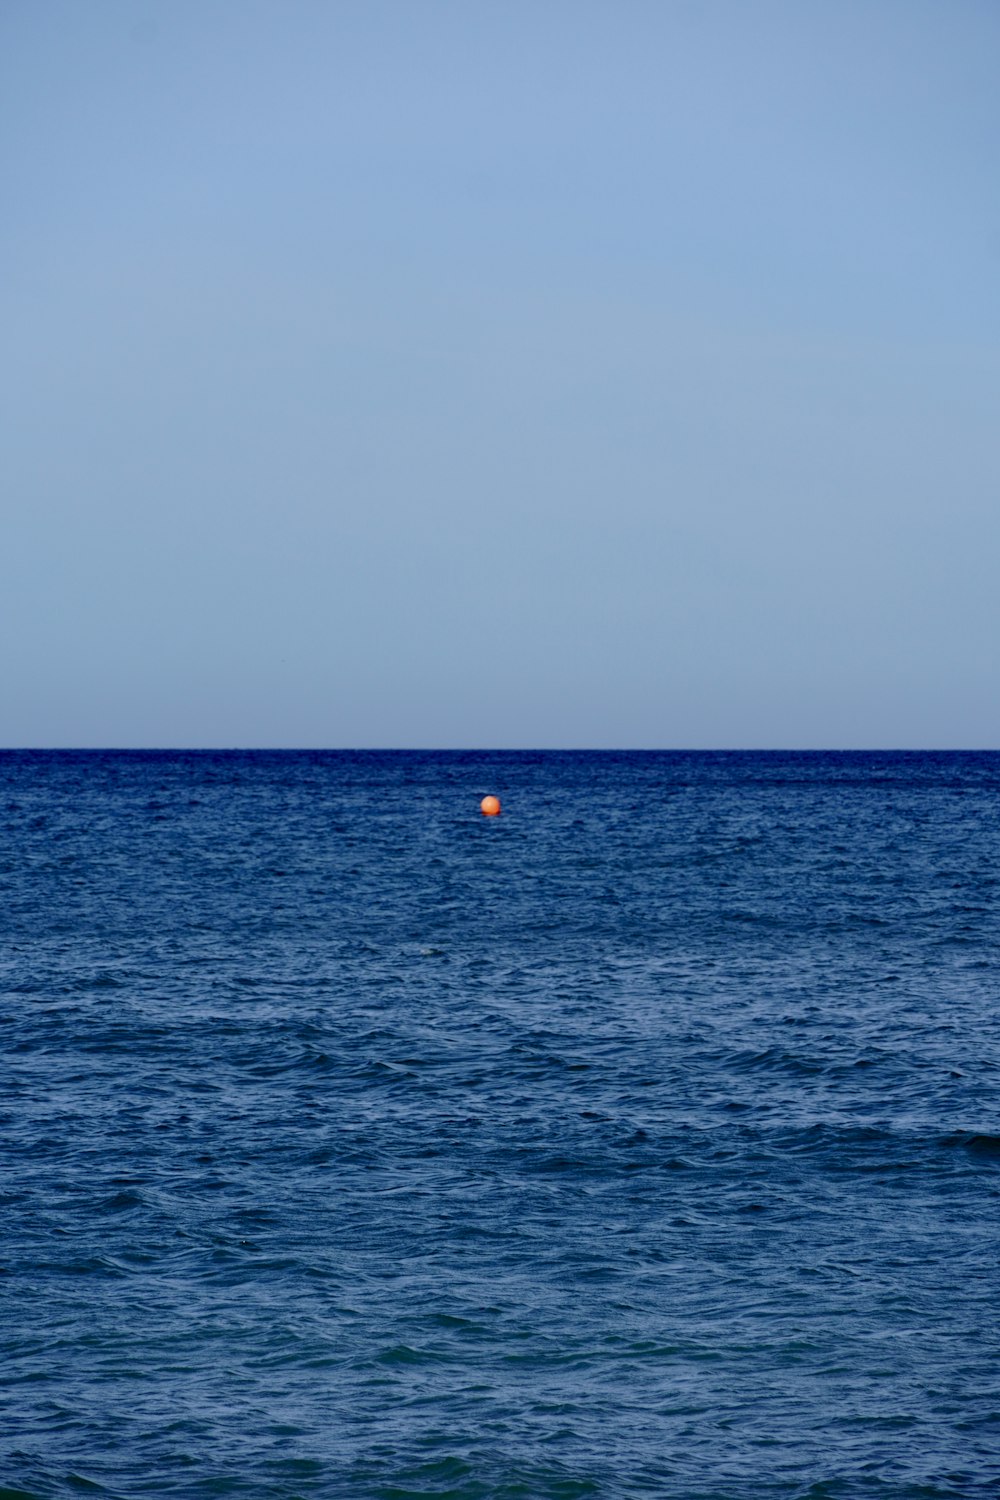 Una boya naranja flotando en medio del océano